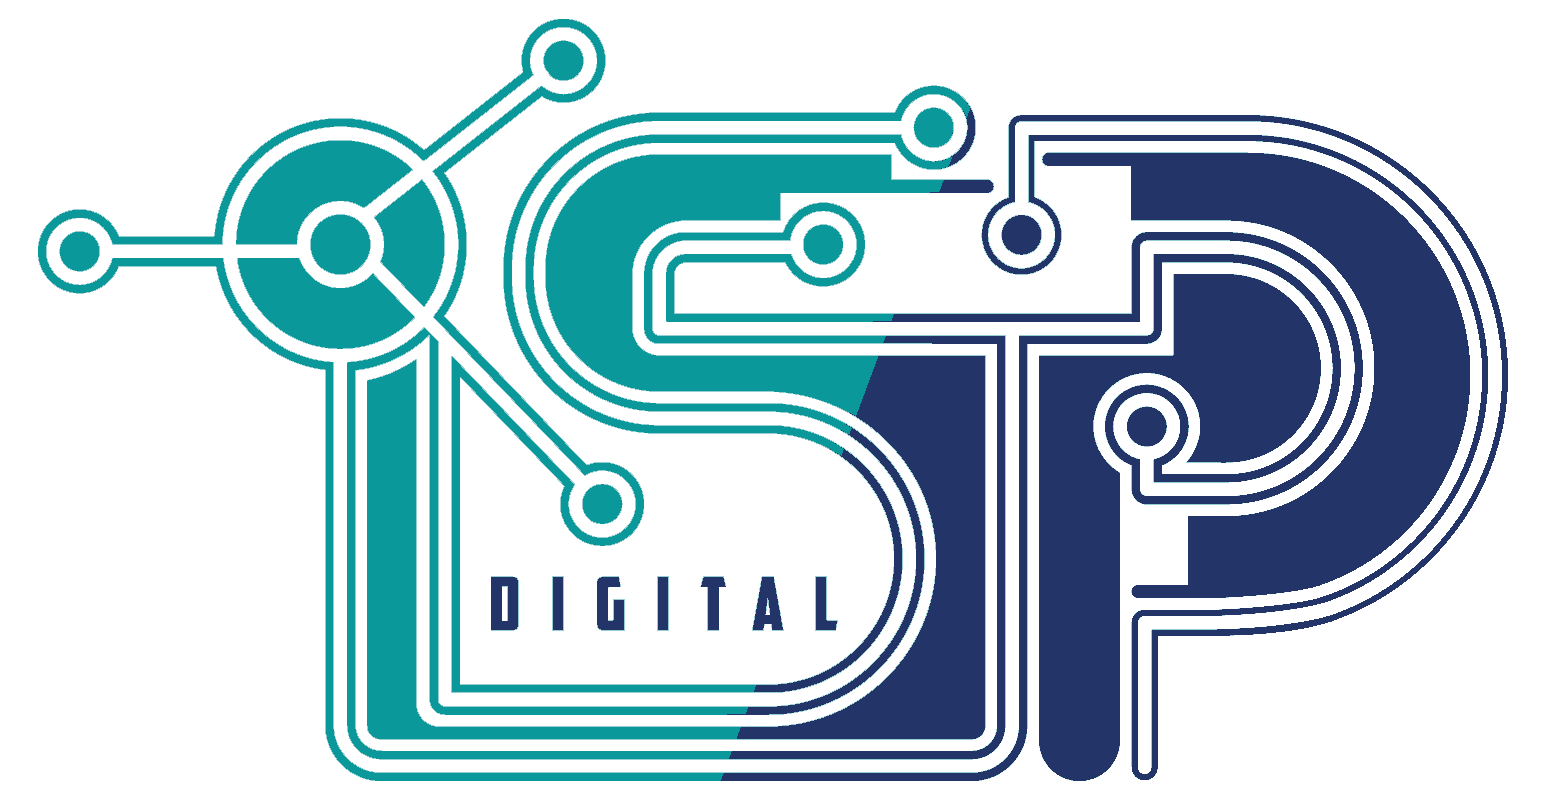 Stargate communication ltd.-logo